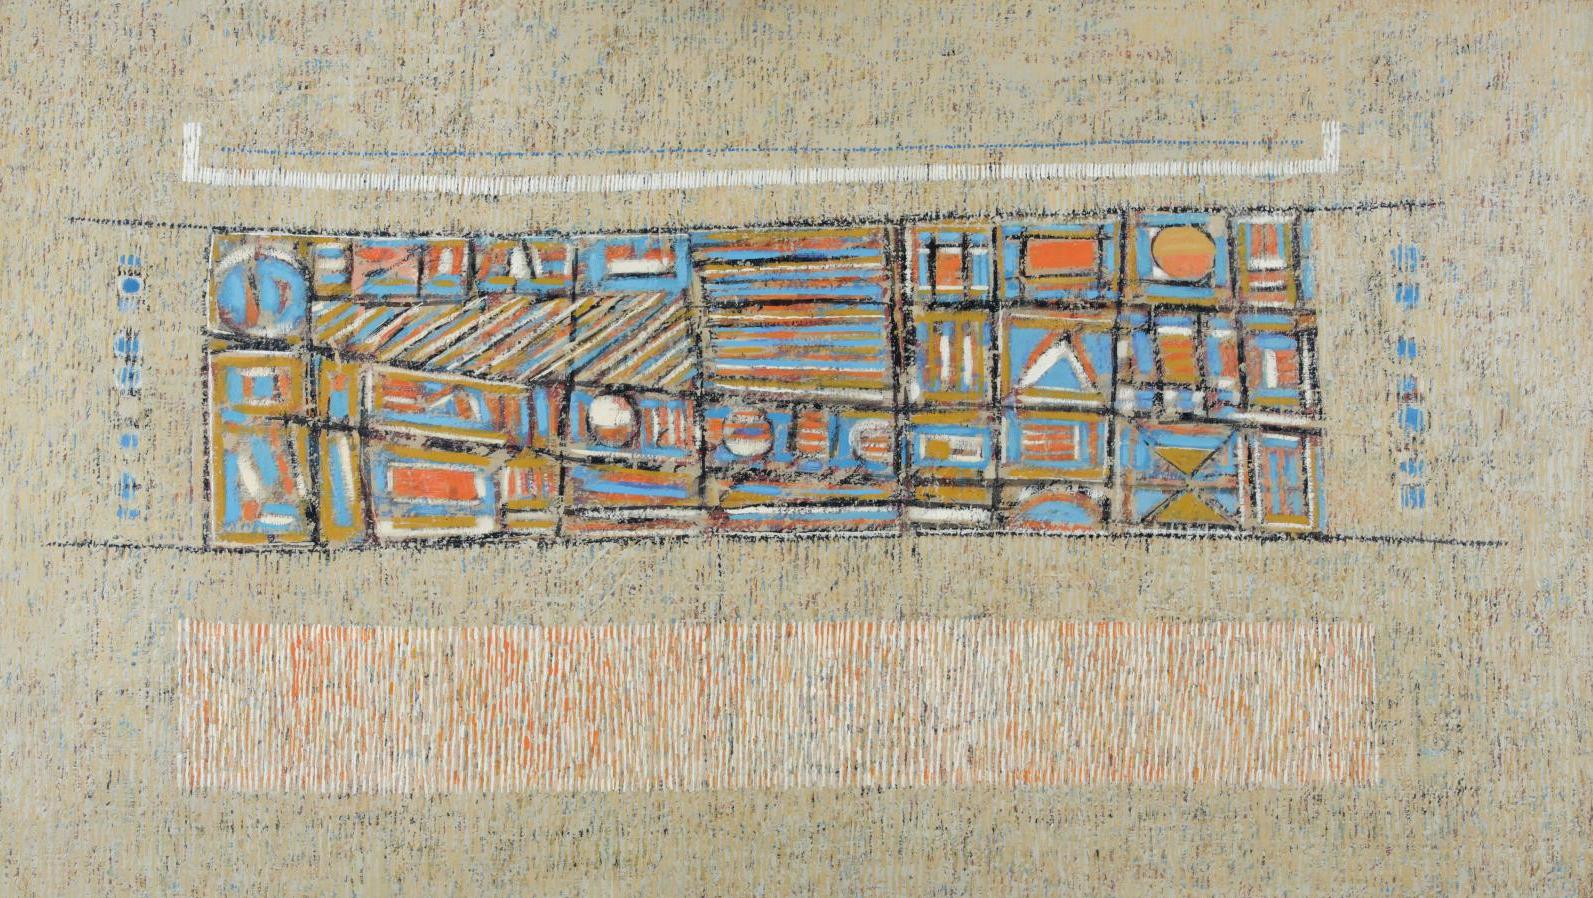 Seund Ja Rhee (1918-2009), Composition abstraite, 1961, huile sur toile, 89 x 146 cm.... Le langage de Seund Ja Rhee